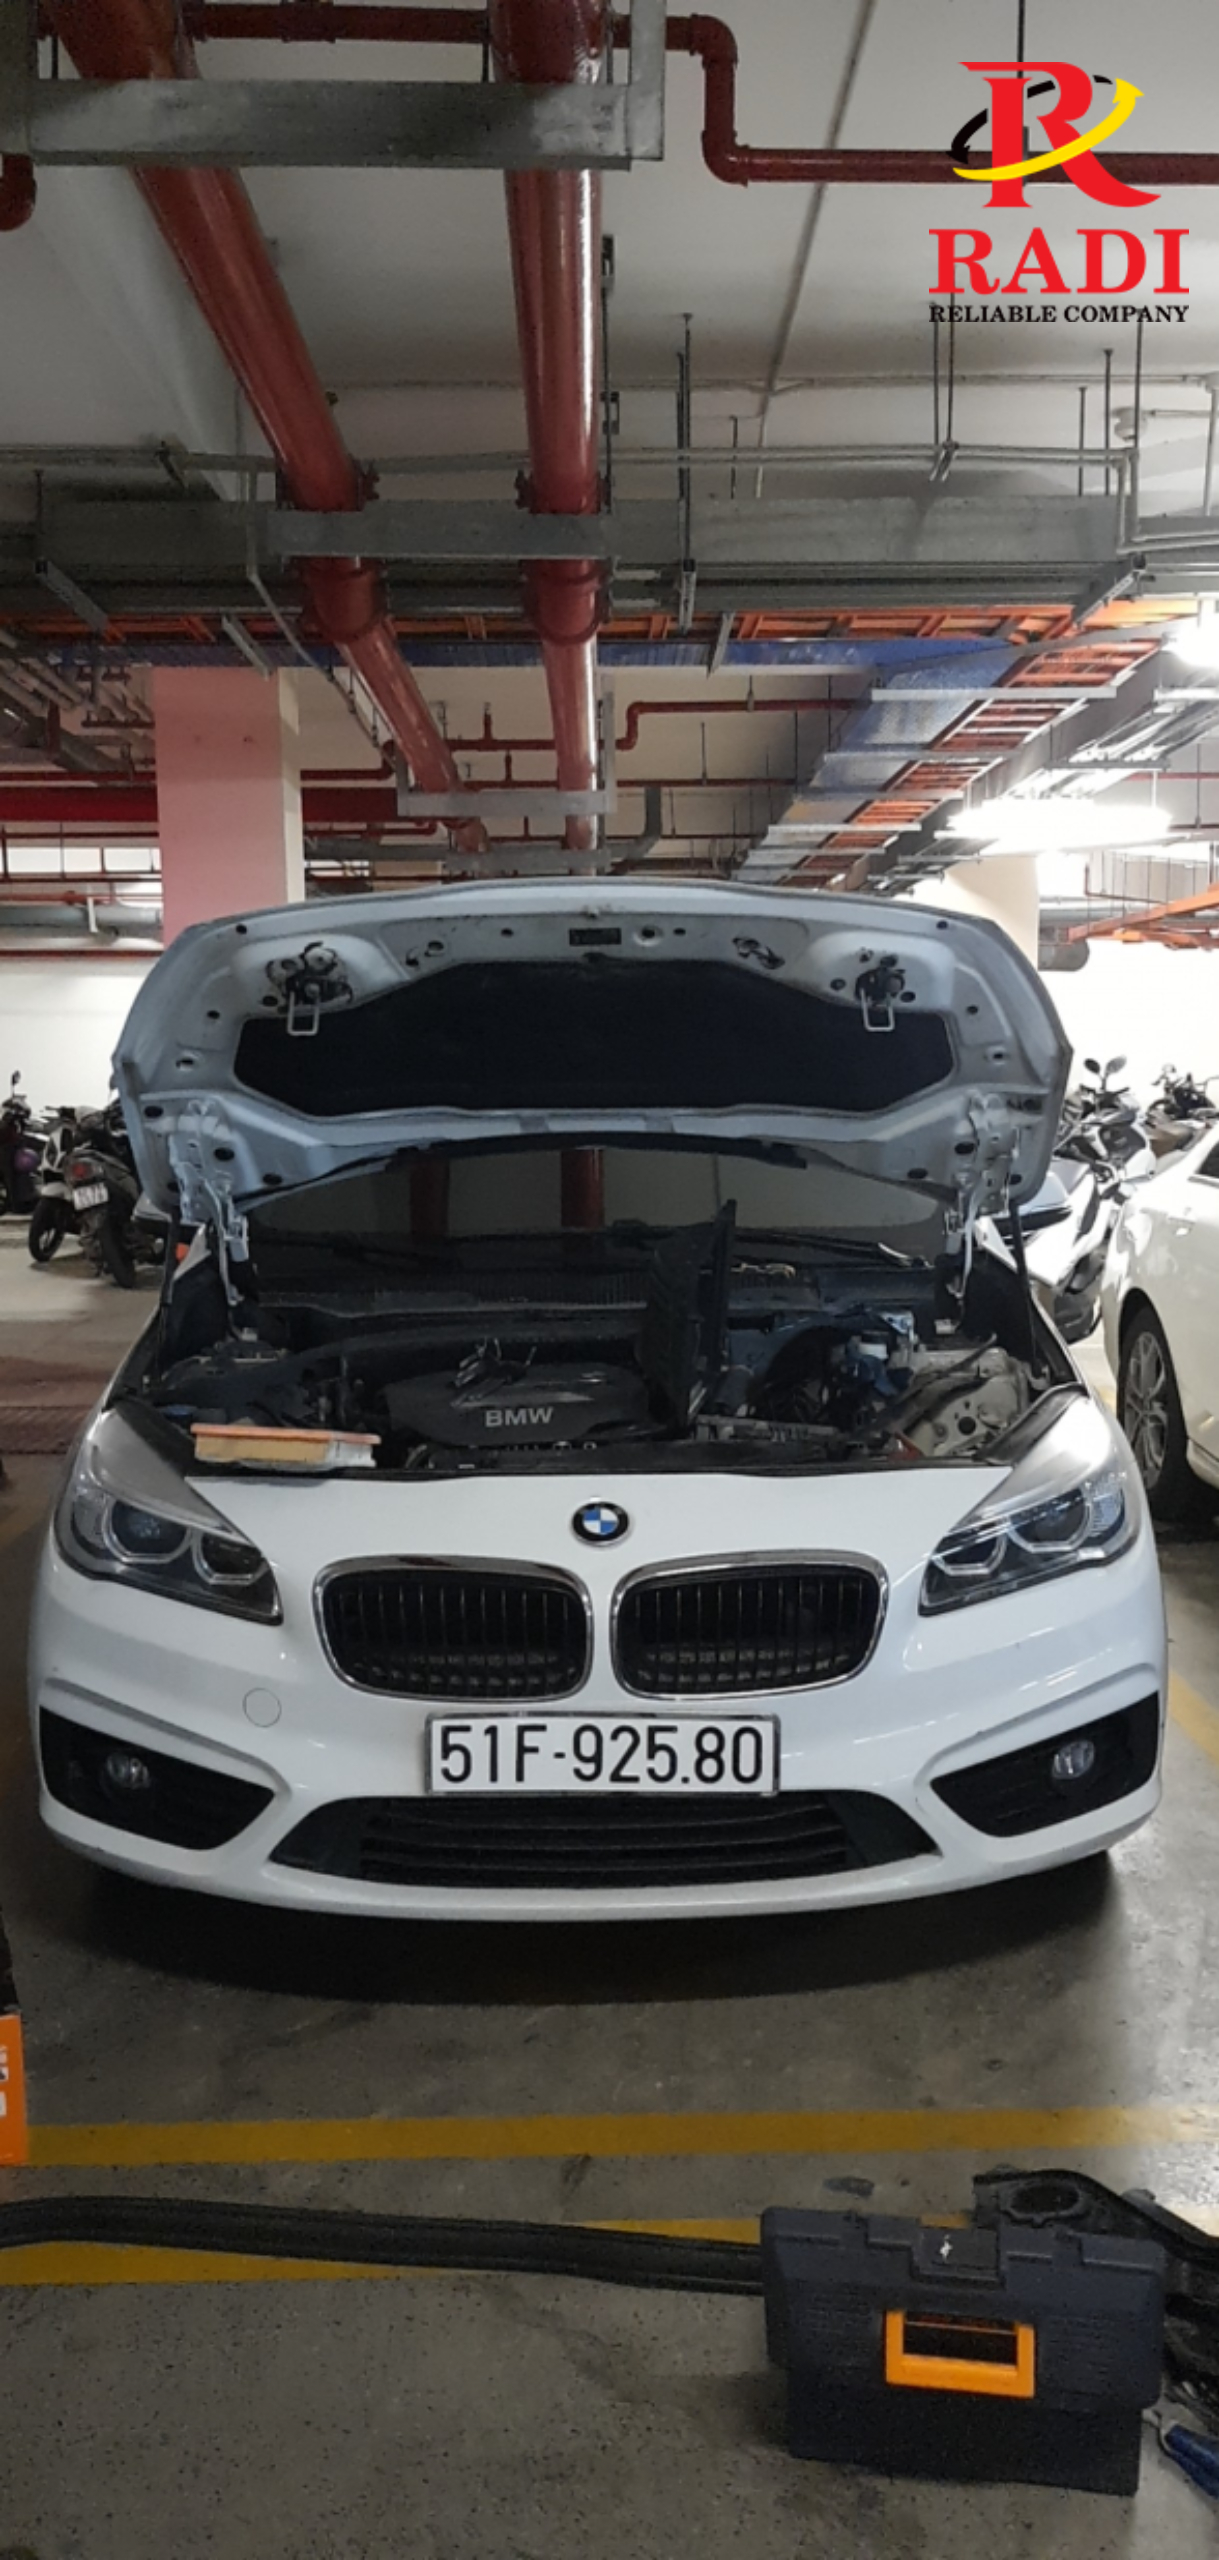 ẮC QUY CHO XE BMW 128i - RADI VIỆT NAM